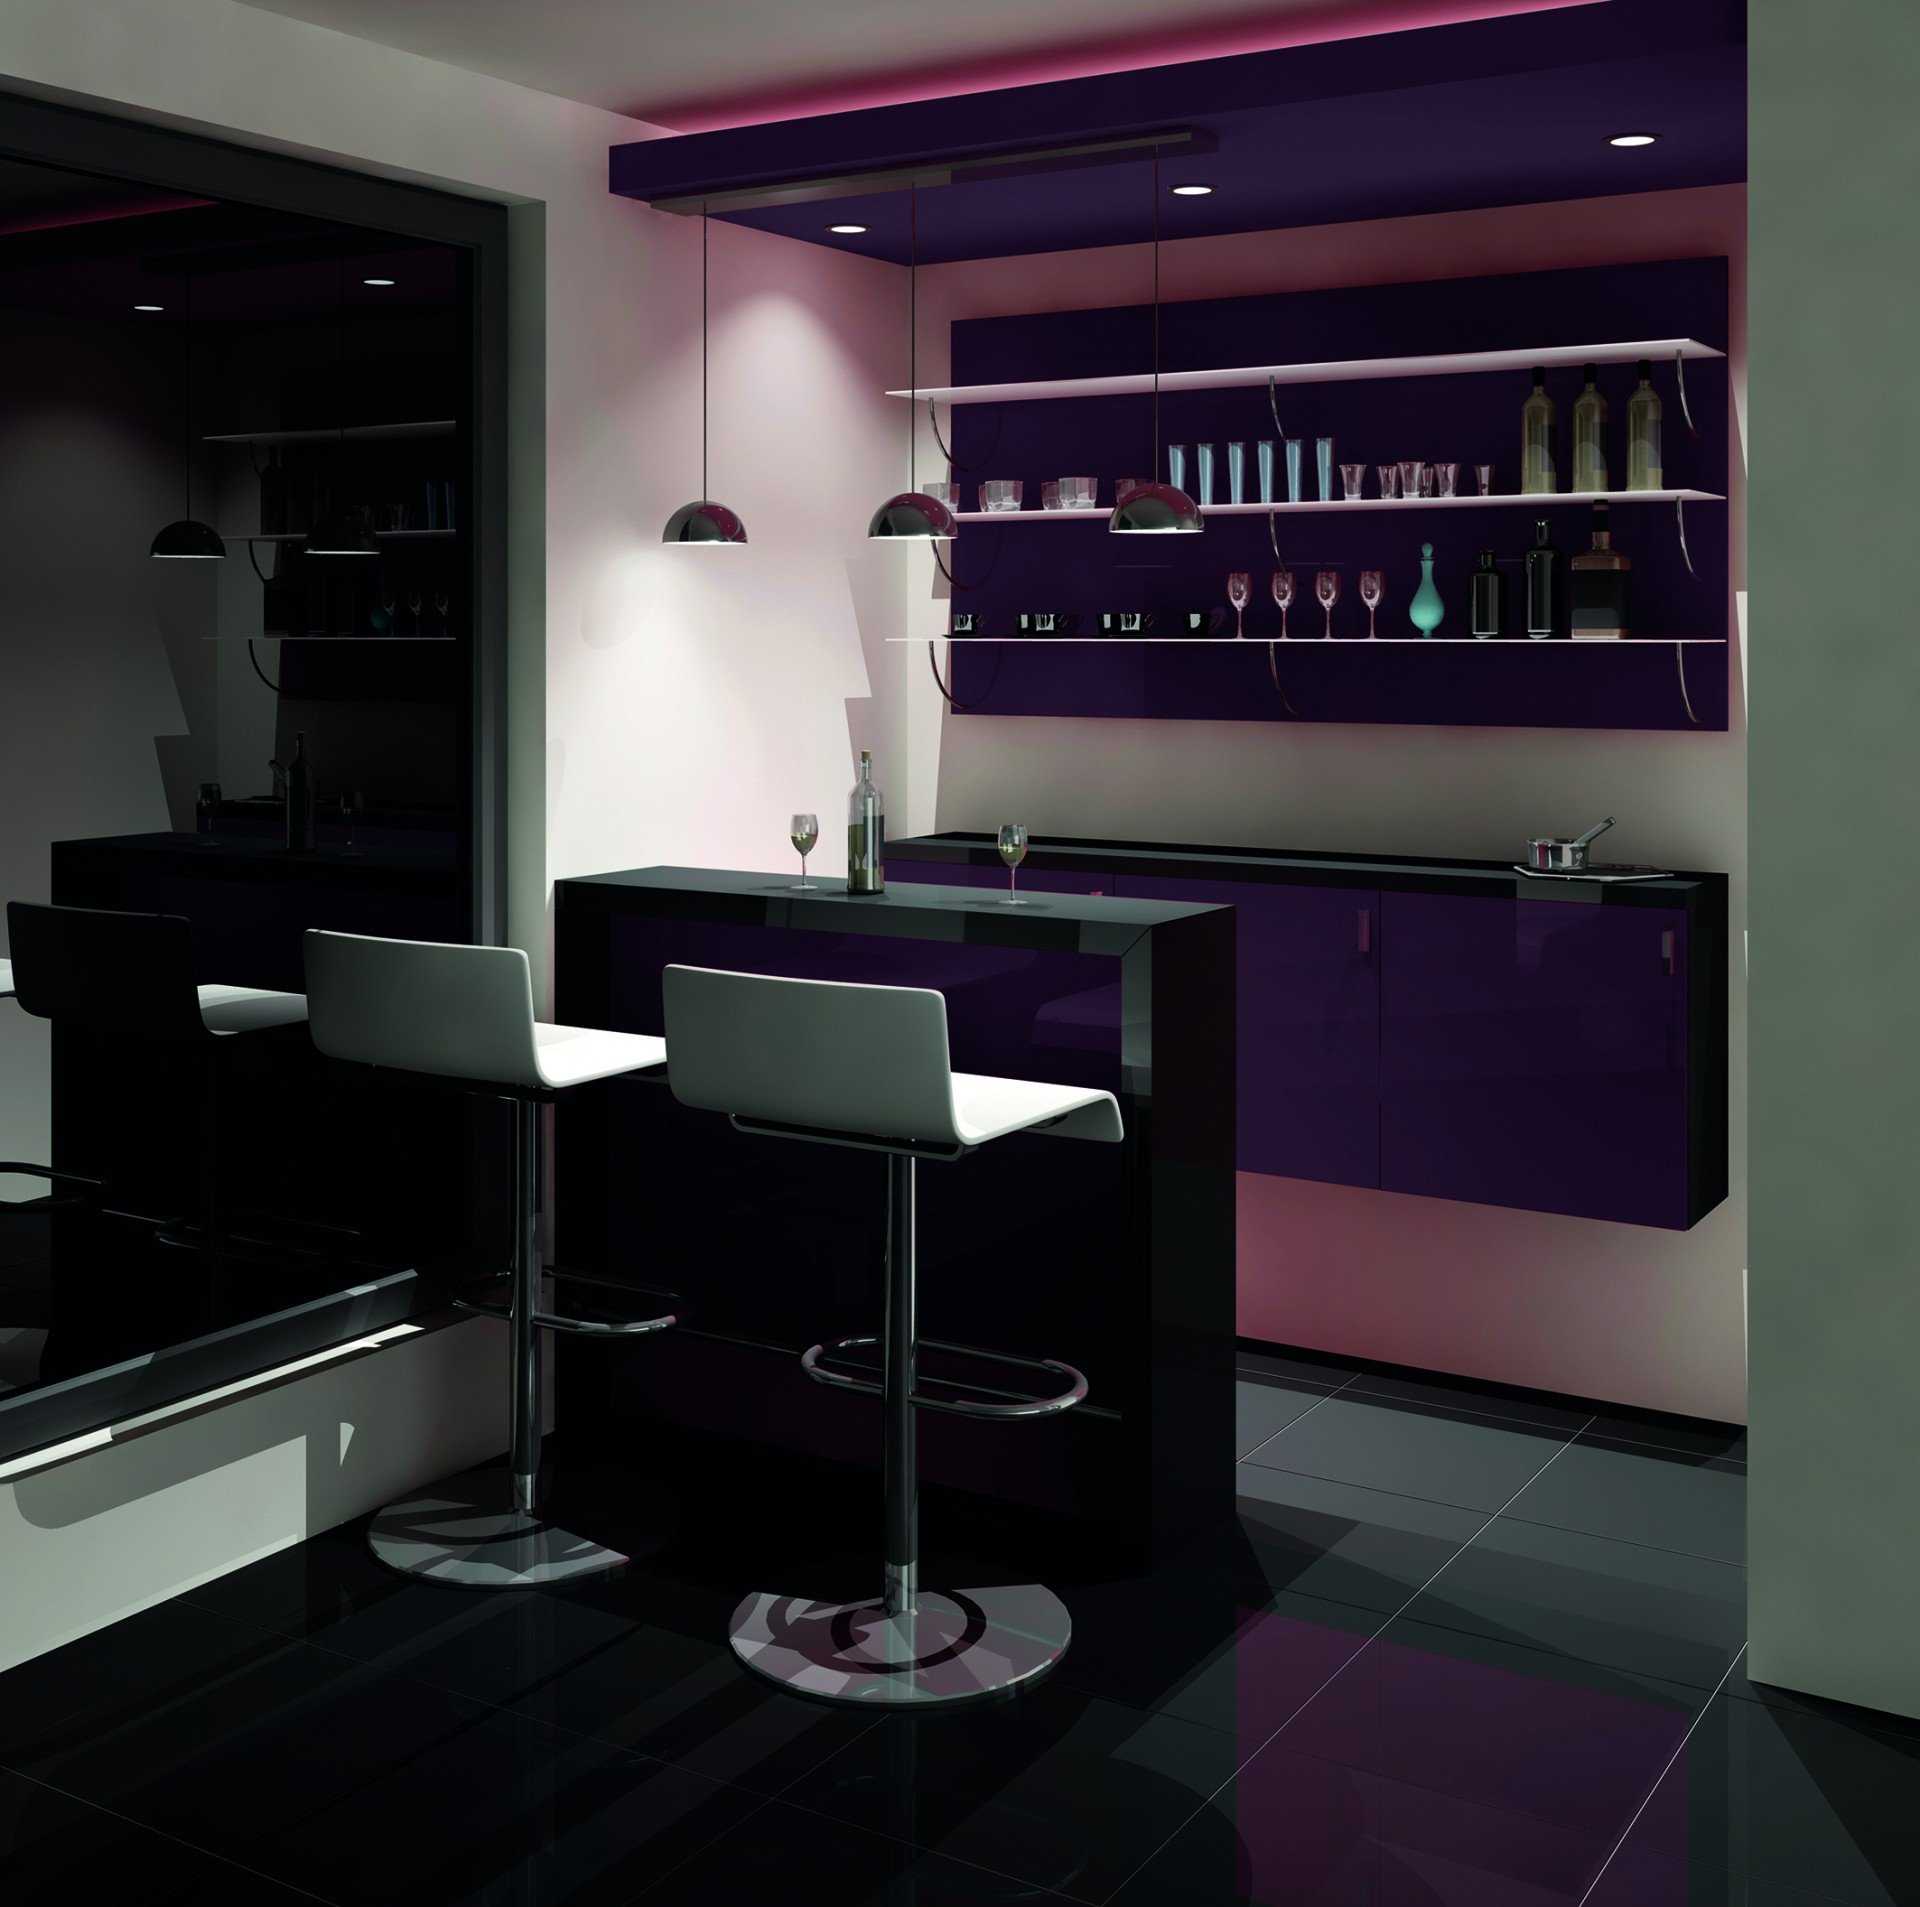 Кухня с барной стойкой — 80 фото гениальных идей дизайна для современных интерьеров